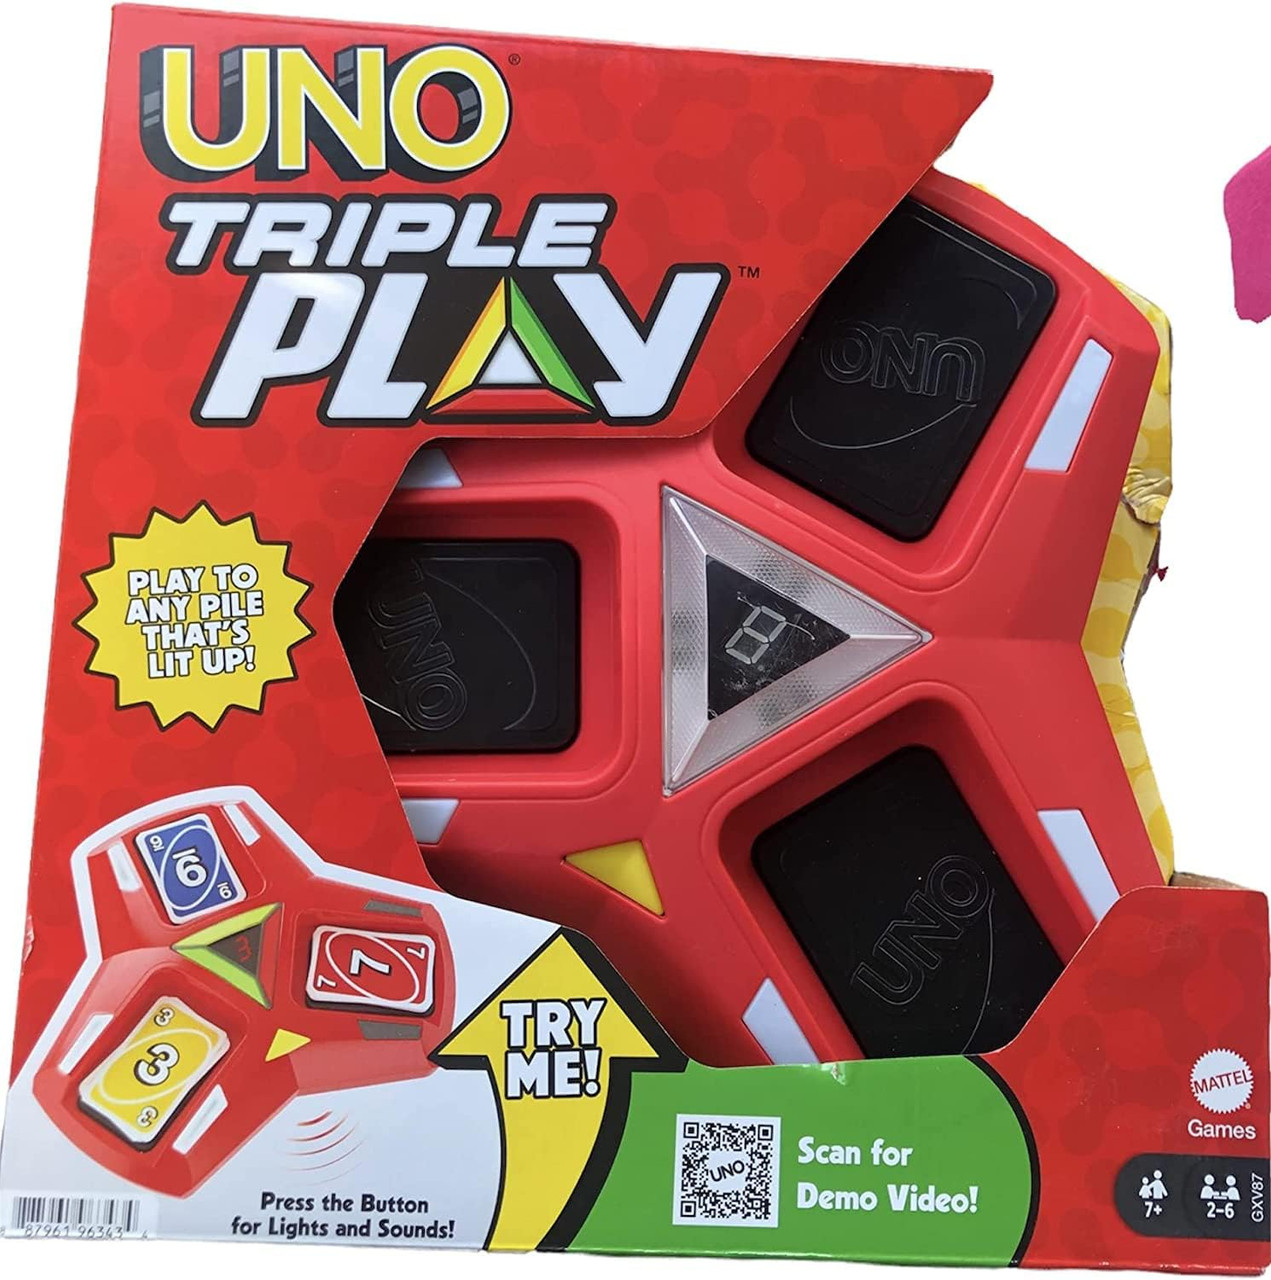 UNO Triple Play - UNO Games 